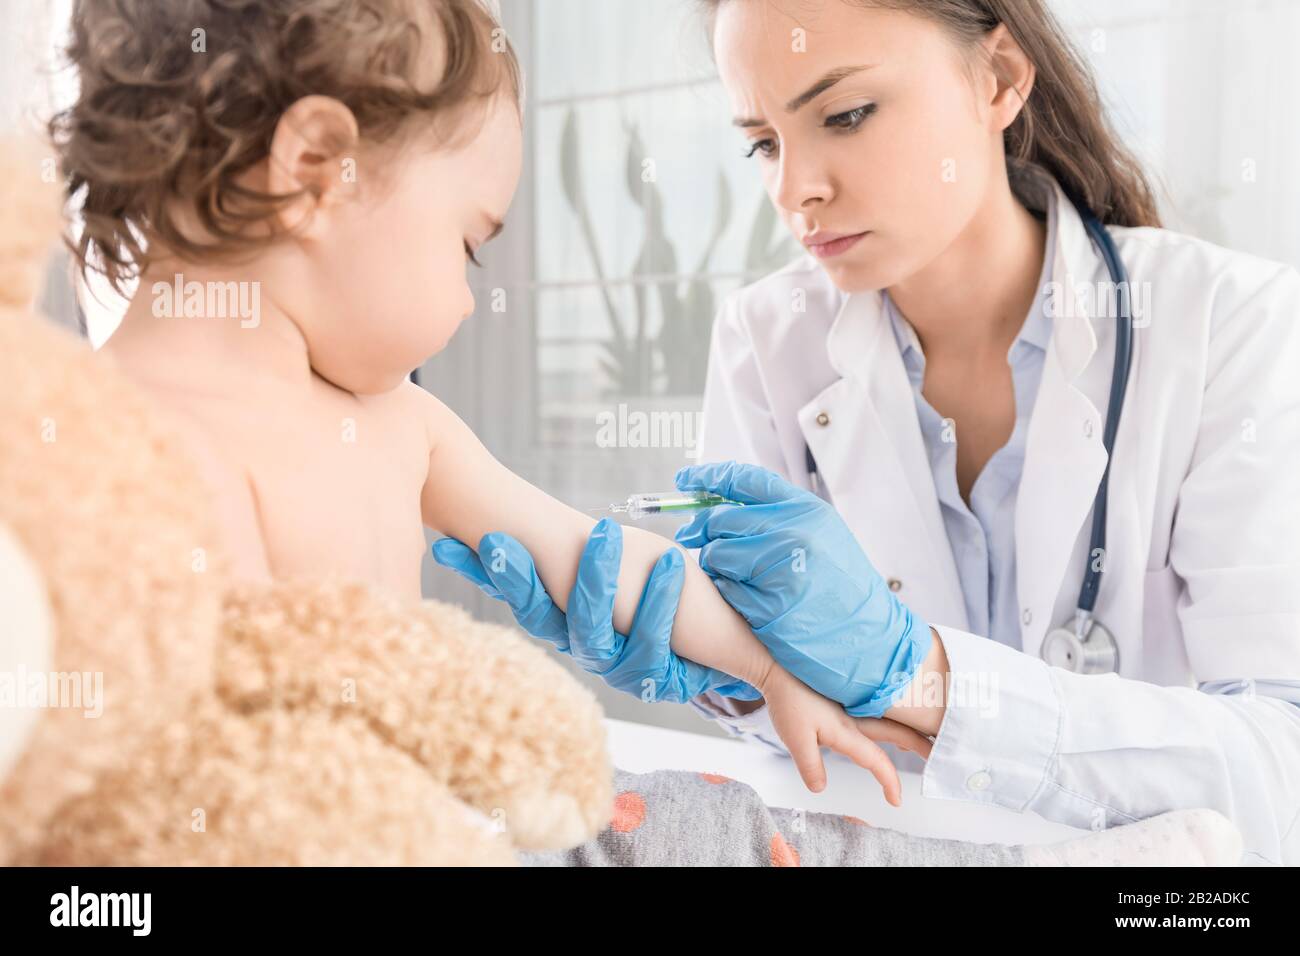 Junge Frau Kinderärztin führt eine Impfung eines kleinen Mädchens durch. Das Mädchen hält ein Maskottchen. Stockfoto